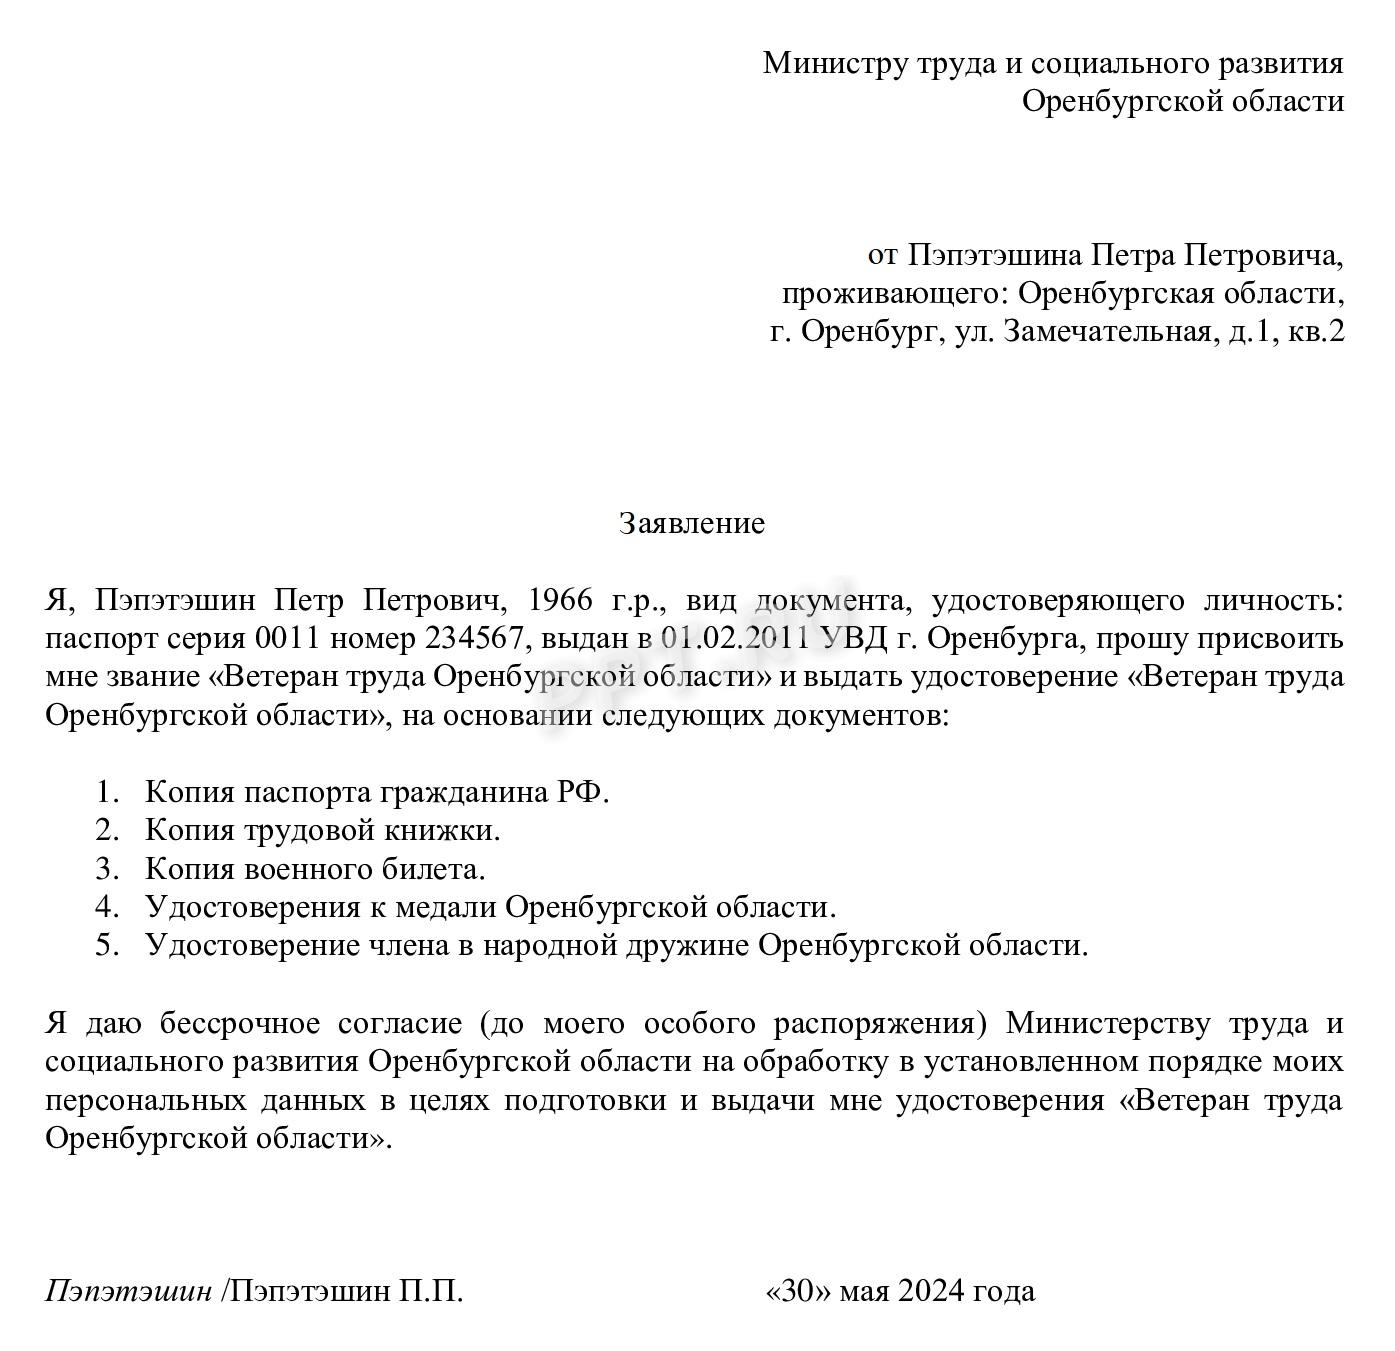 Образец заявления на получение звания «Ветеран труда» Оренбургской области